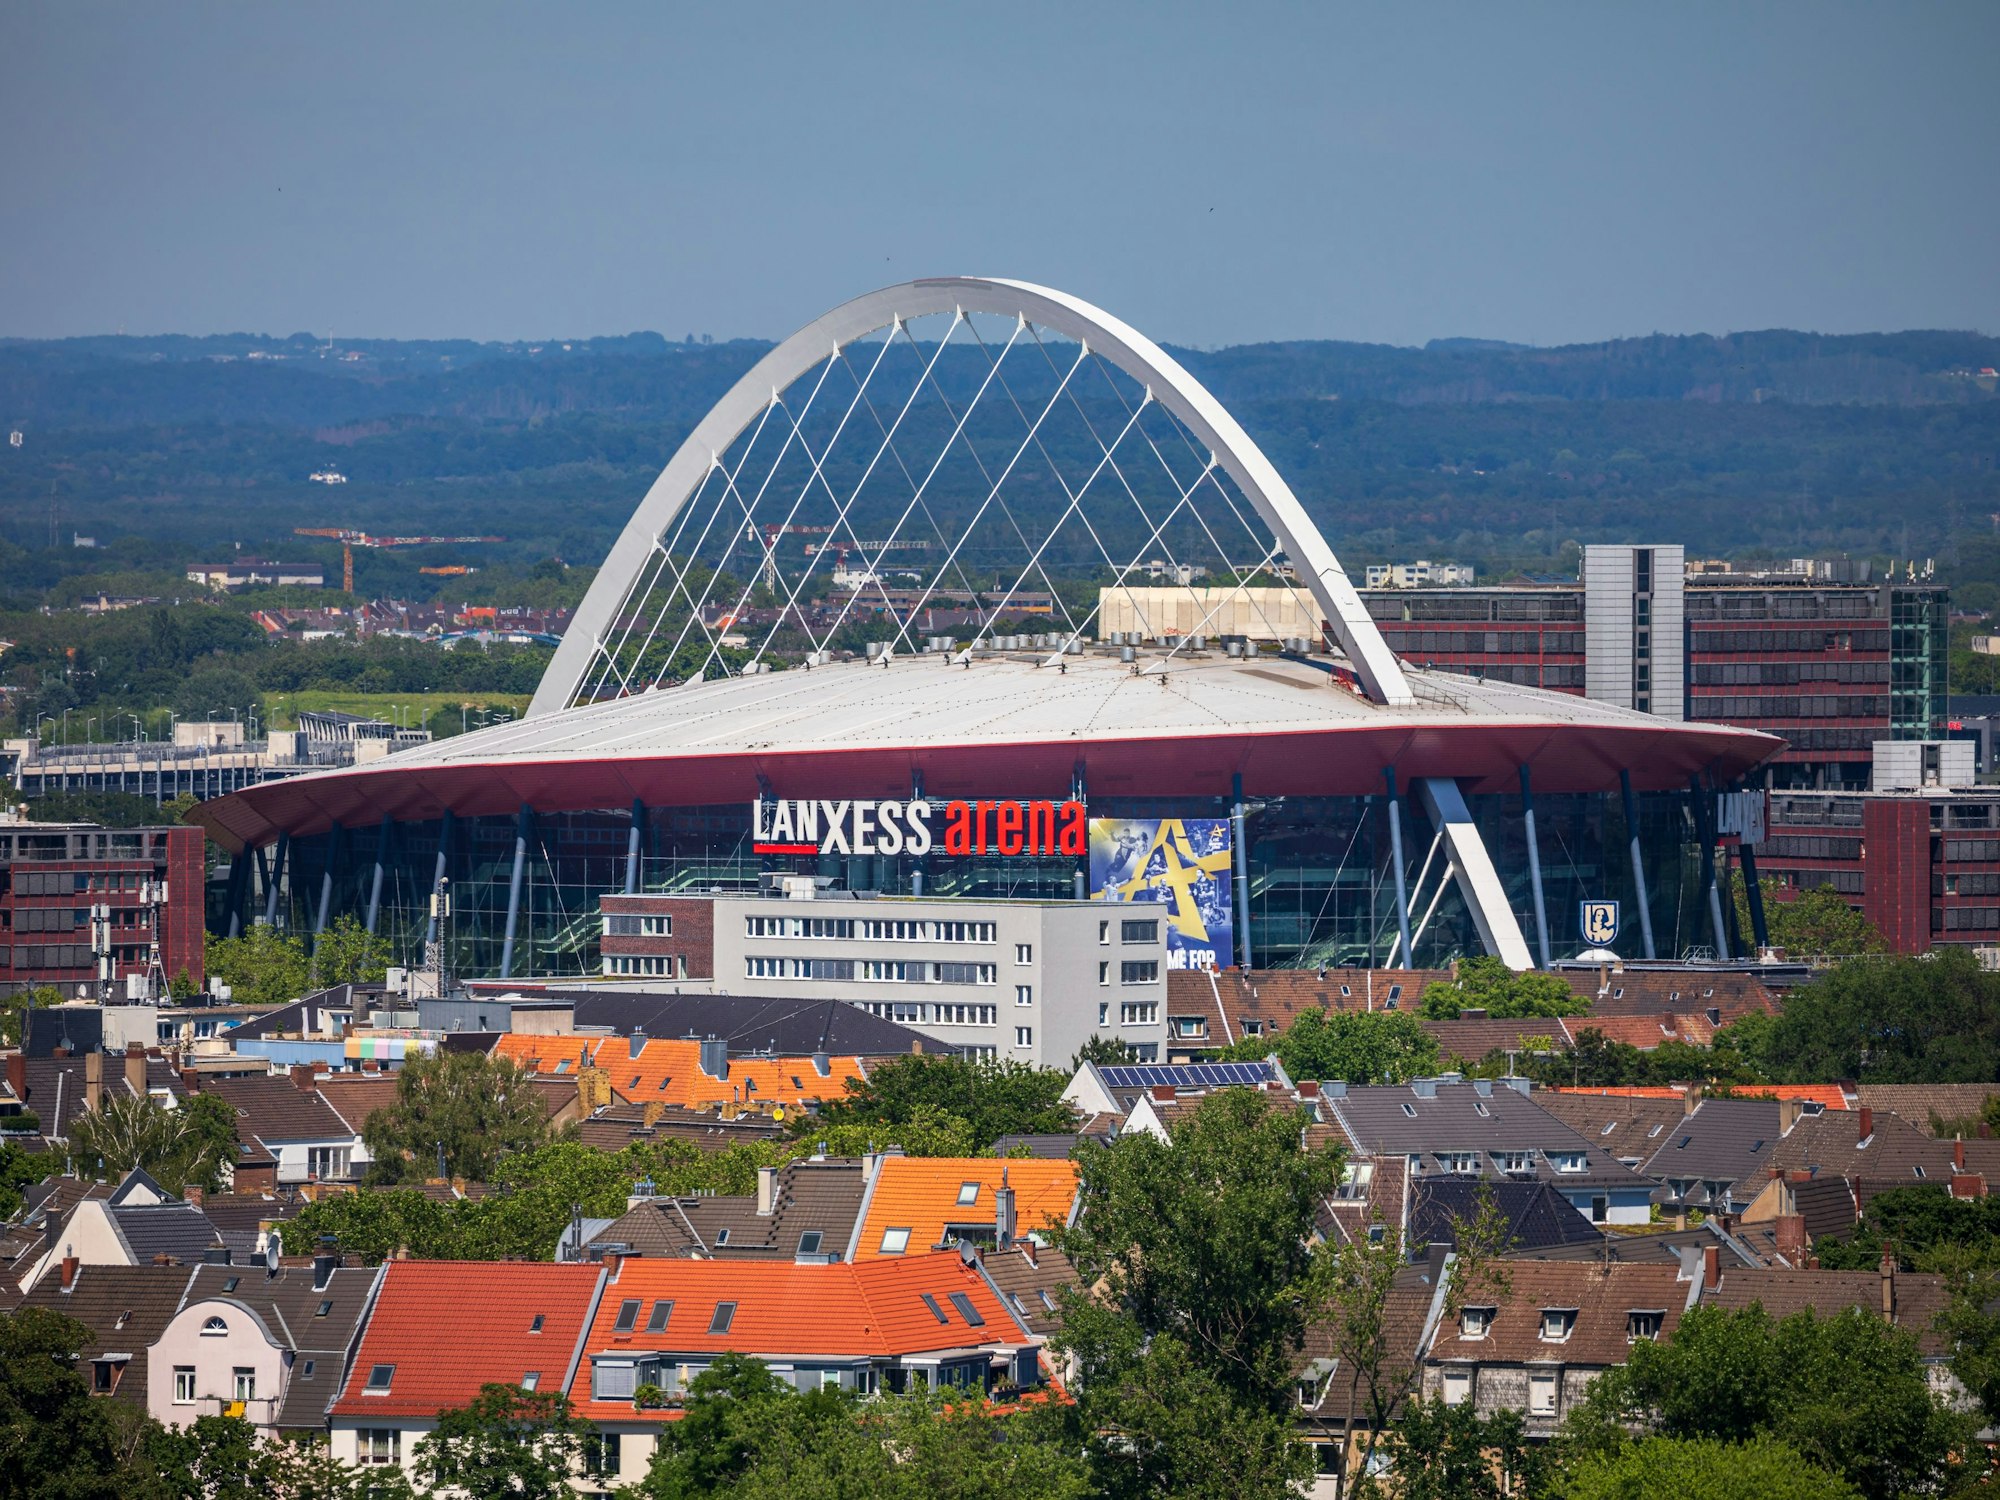 Die Lanxess-Arena, früher als Kölnarena bezeichnet, ist inmitten des Kölner Stadtteils Deutz zu sehen, während der Blick bis weit in das Umland reicht.